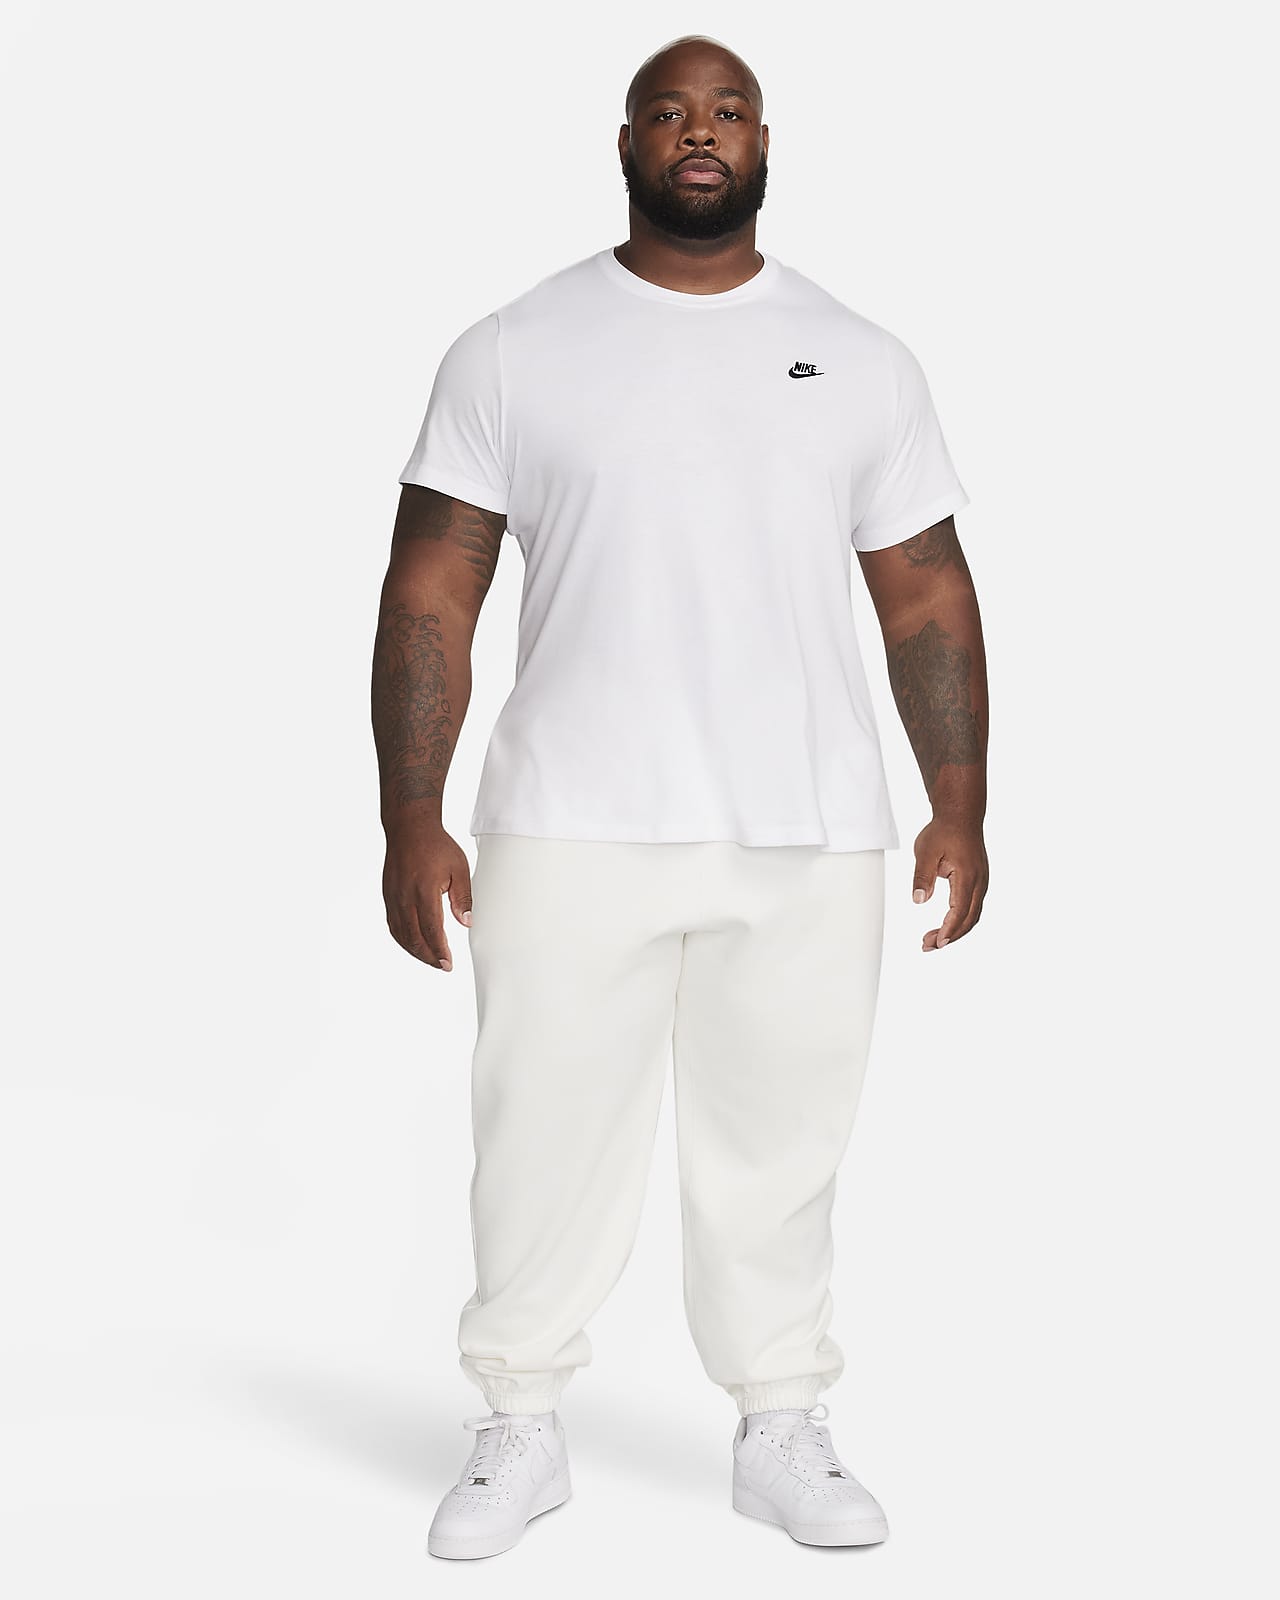 Nylon Track Pants Nike Solo Swoosh Men's Track Pant Black/ White